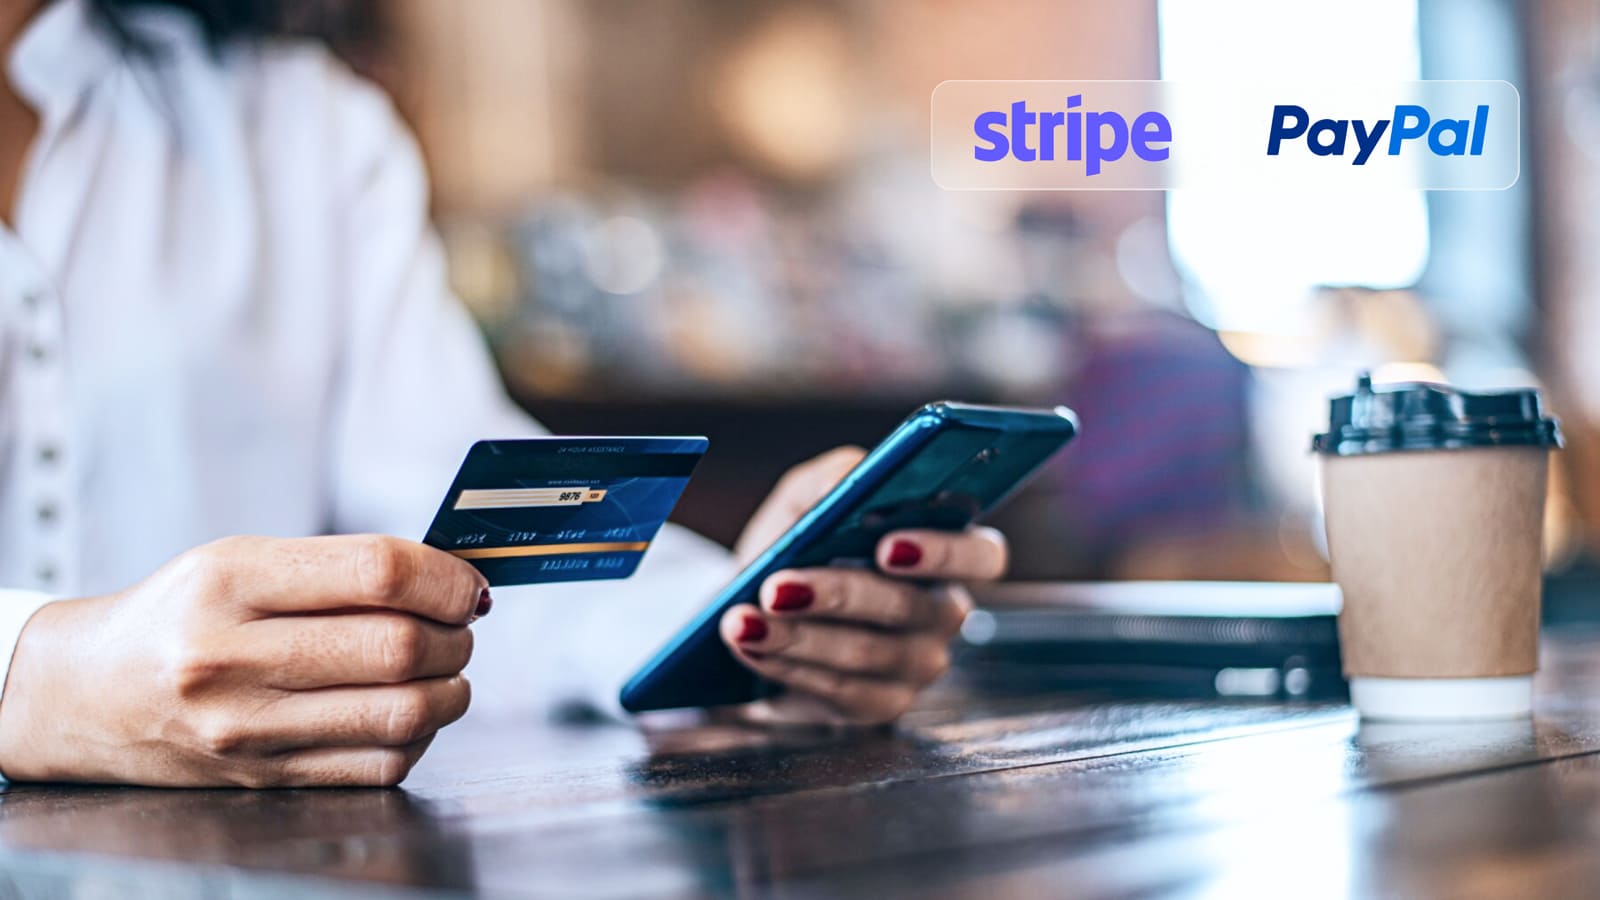 И Stripe, и PayPal обладают широким функционалом, который будет удобен и малому, и большому бизнесу